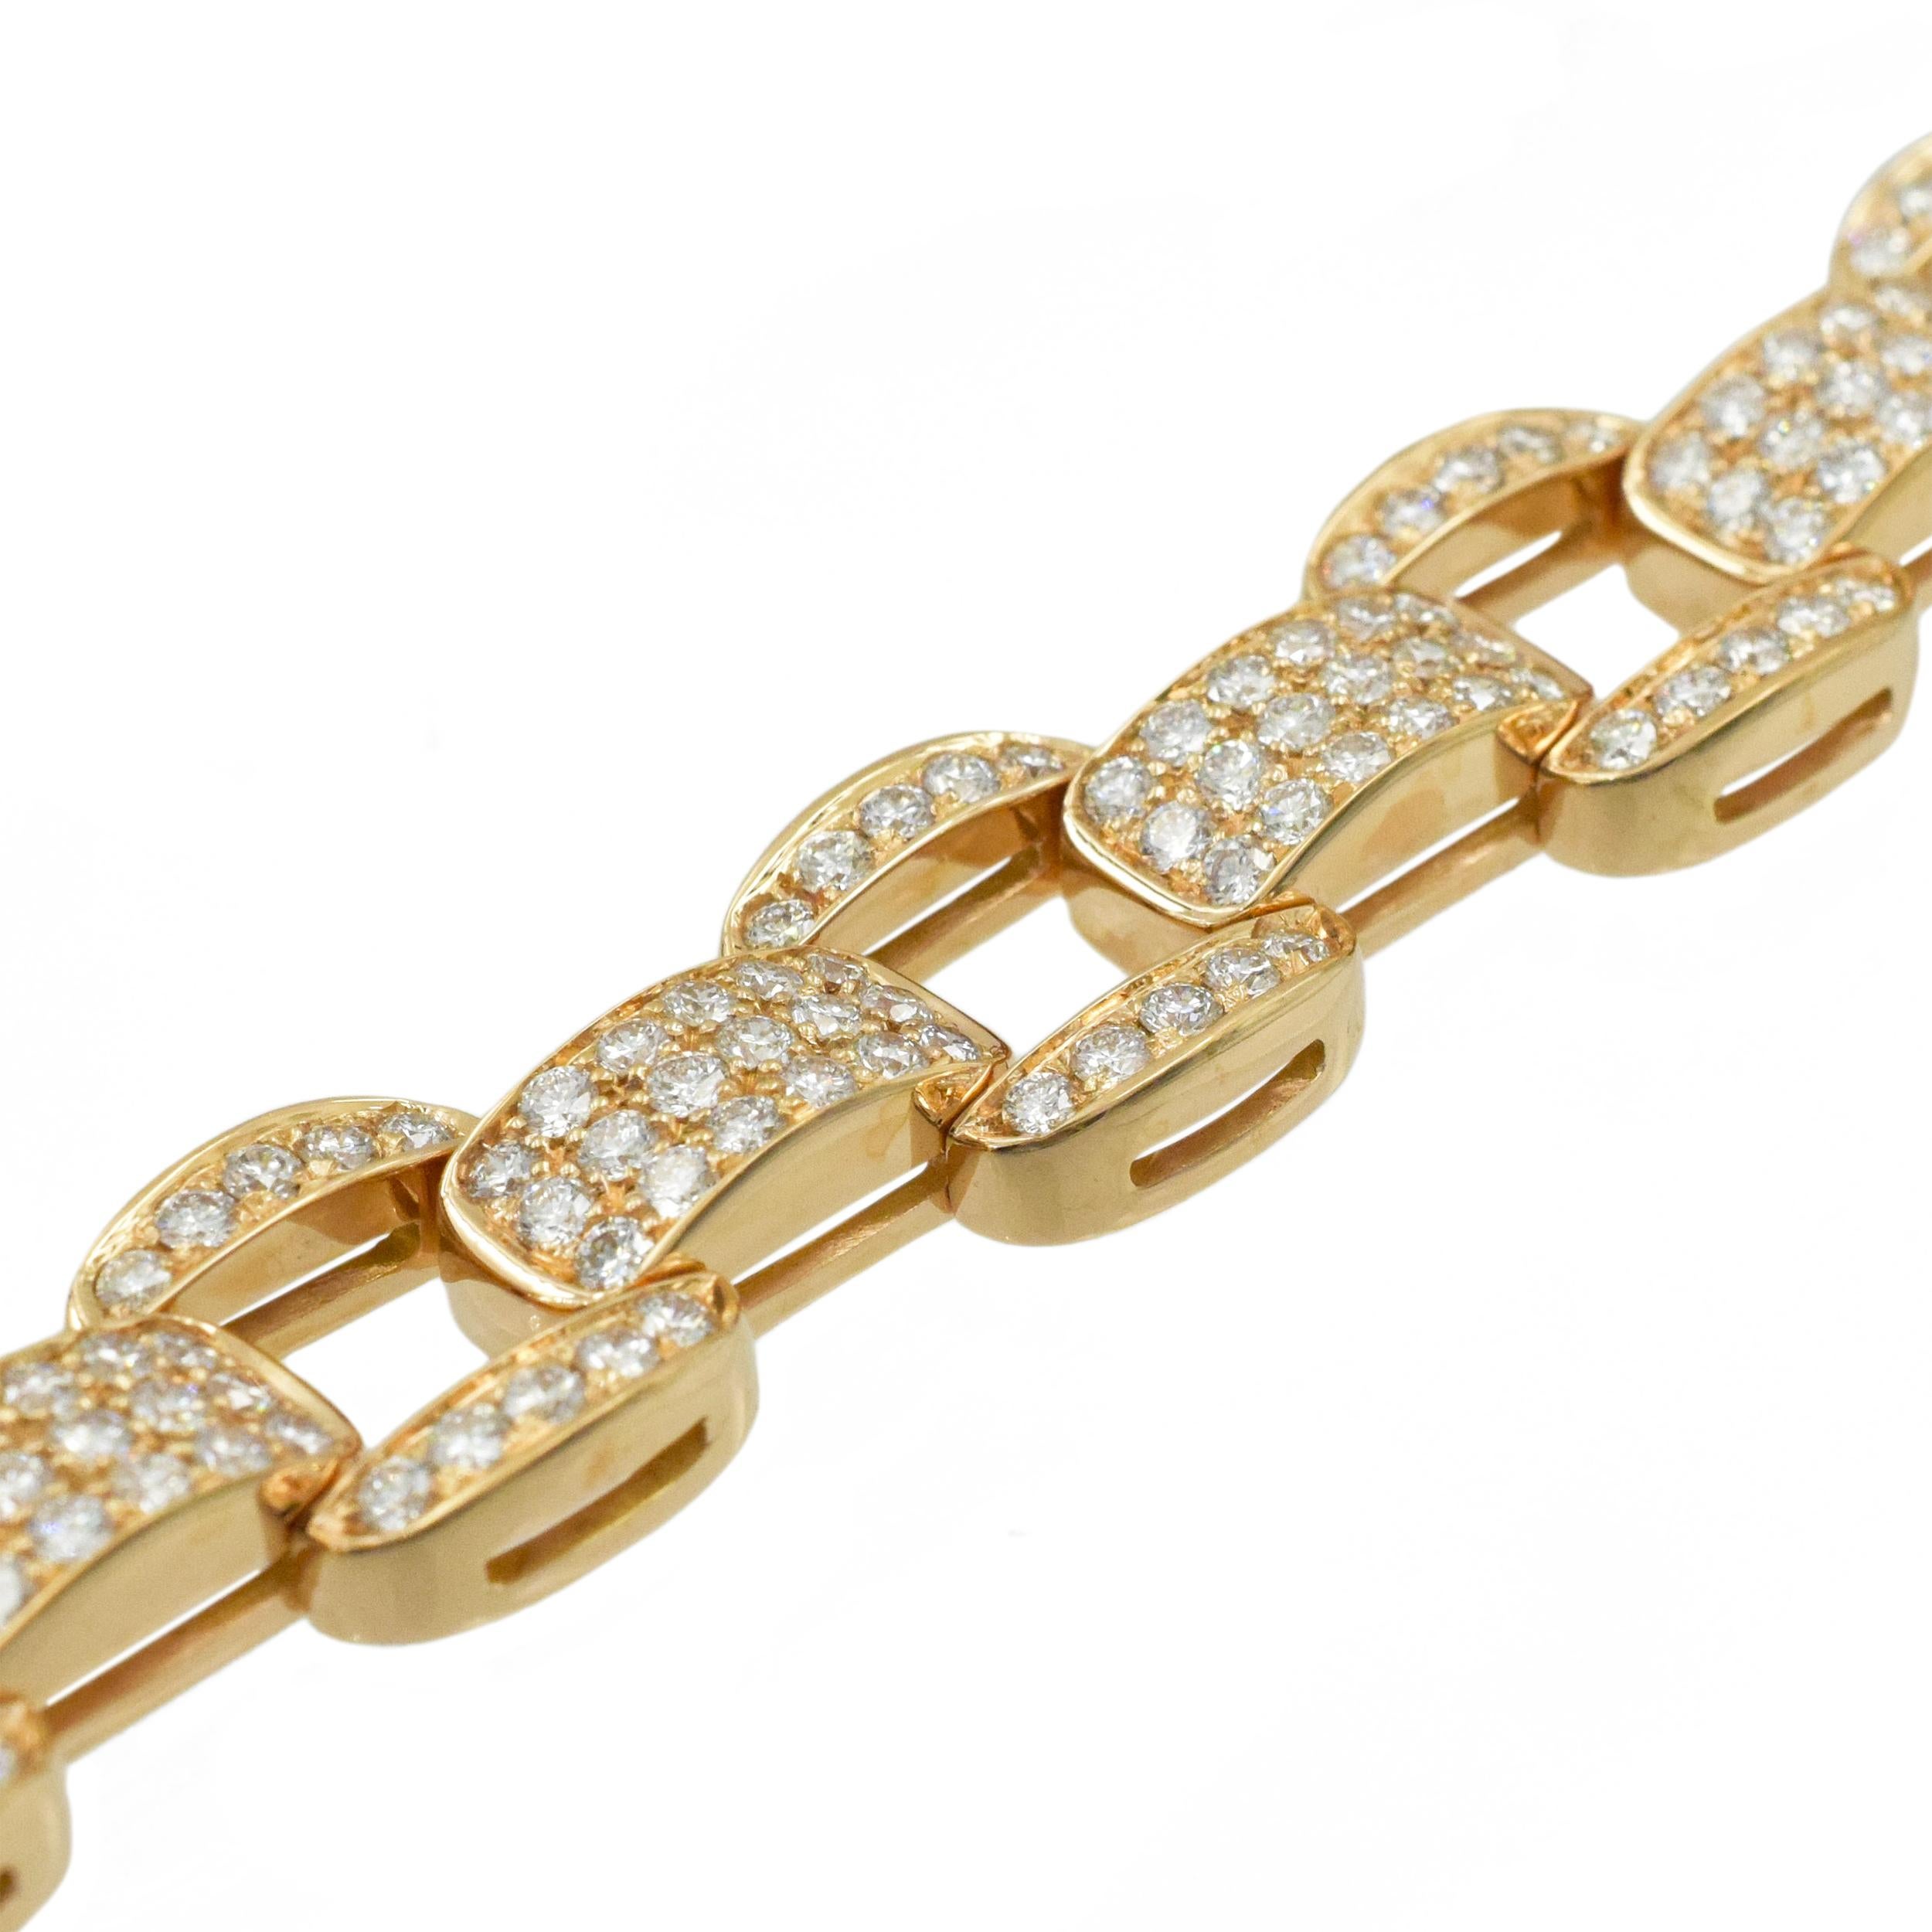 Oscar Heyman Diamond Bracelet in 18k Rose Gold 2